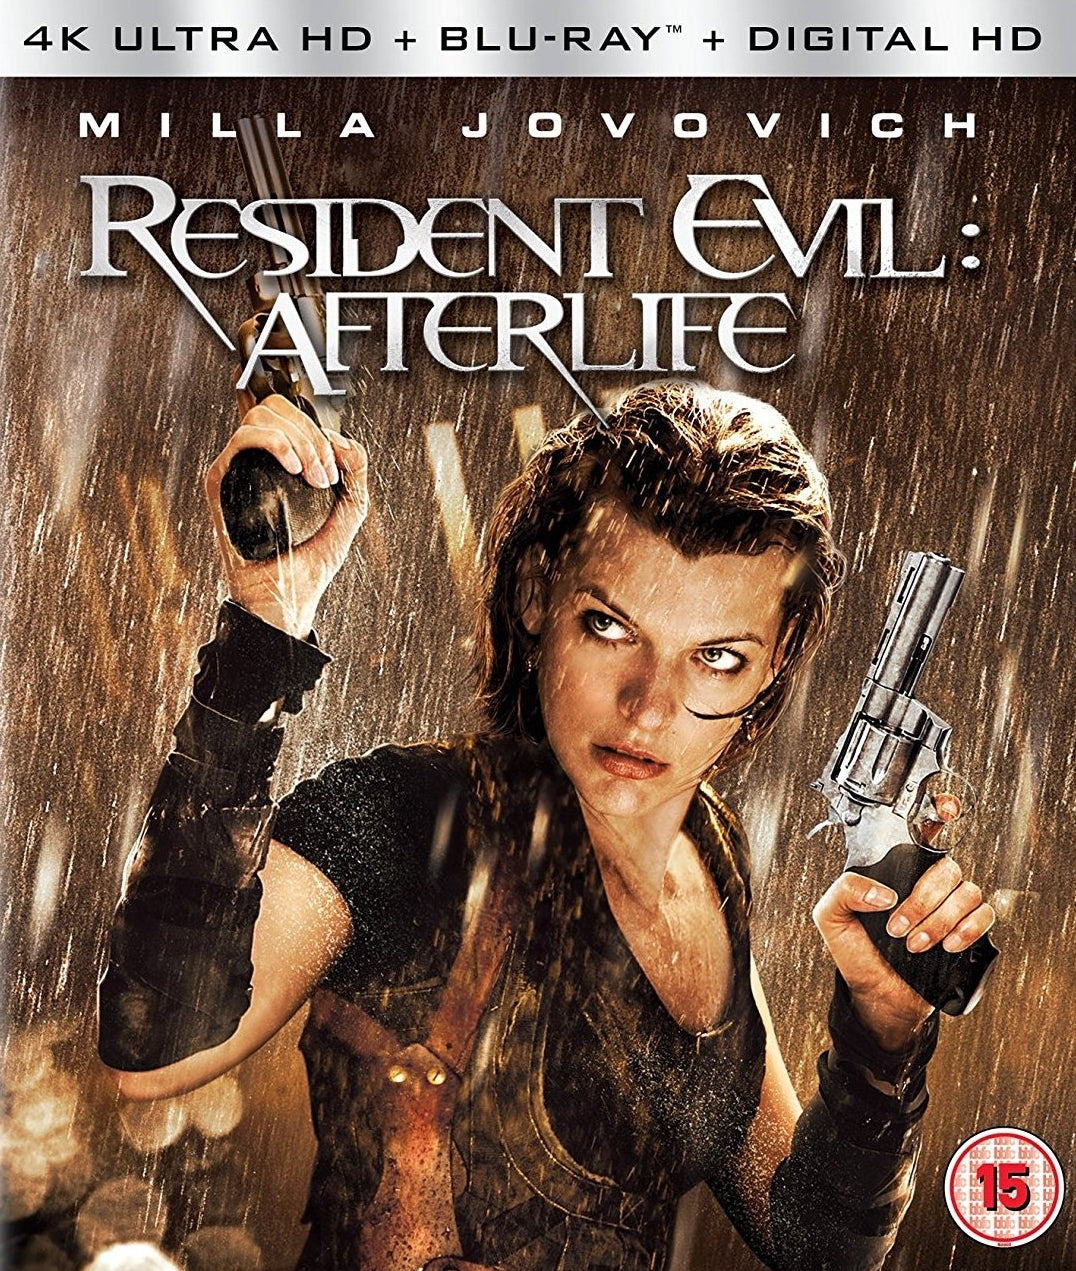 resident evil afterlife movie poster